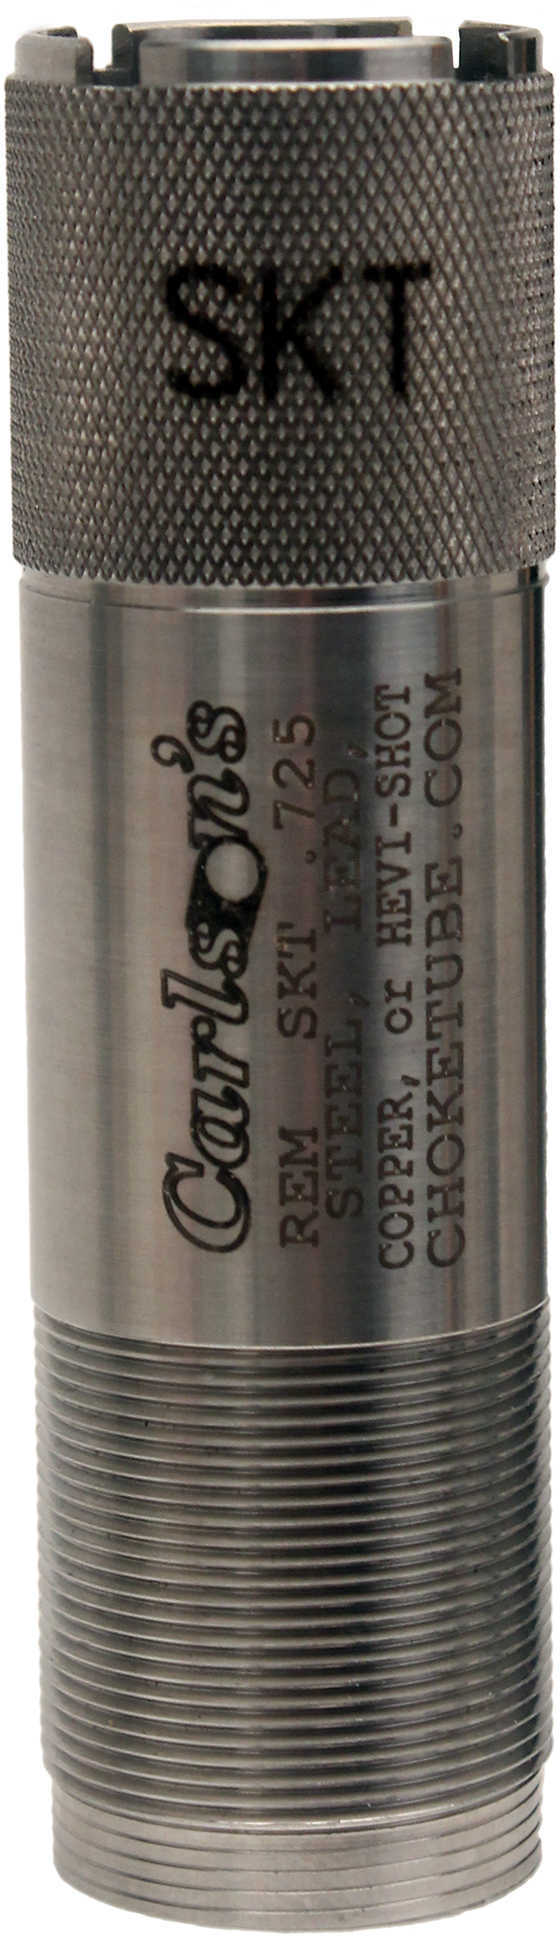 Carlsons Choke Tube 12 Gauge Skeet Remington Sporting Clays